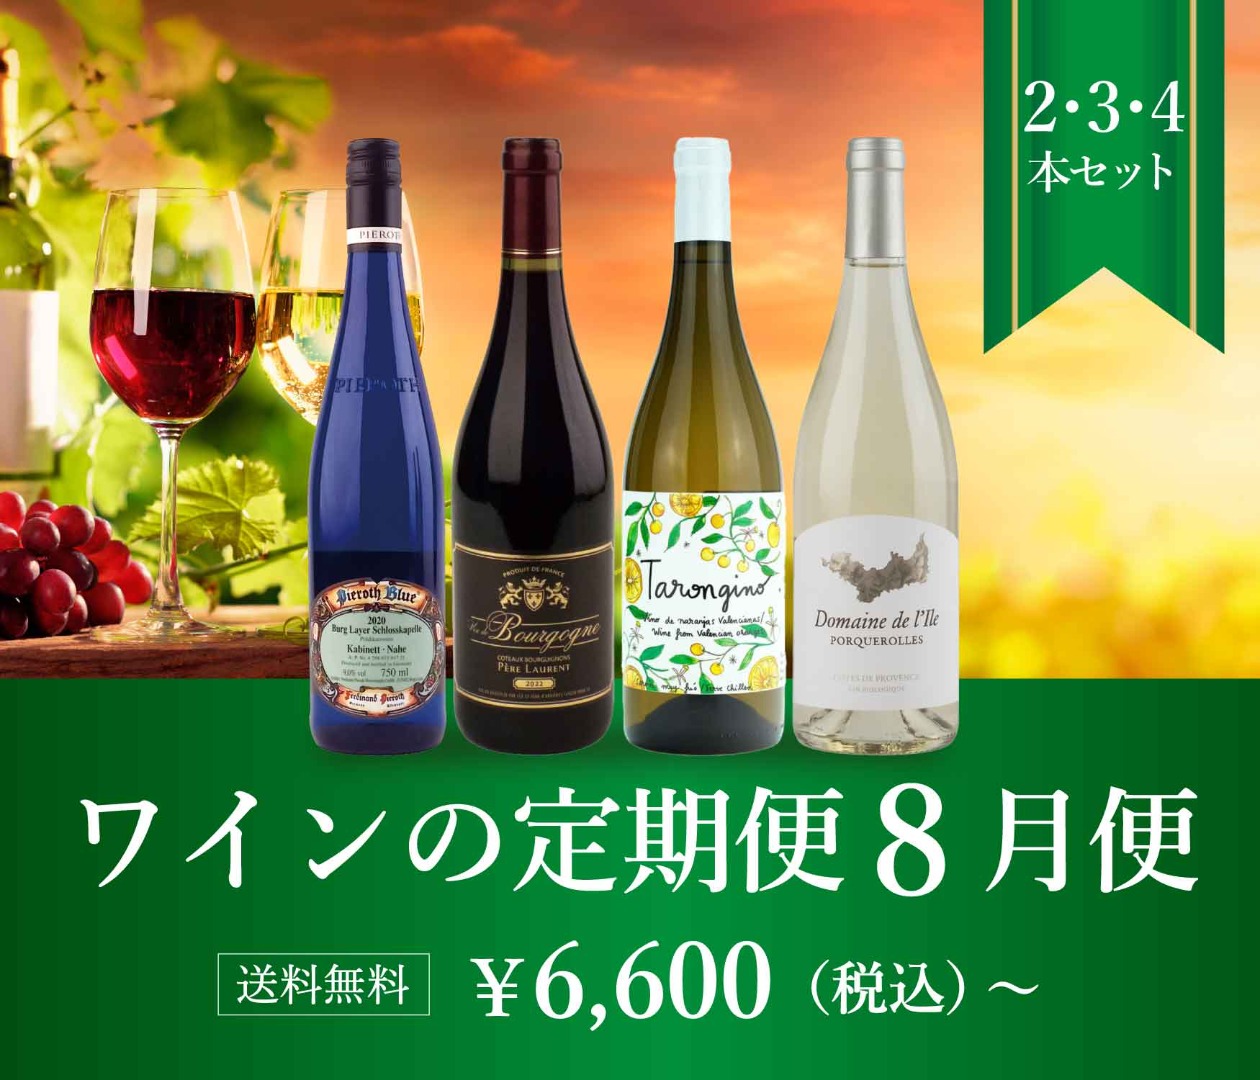 高級ワイン通販ならピーロート・ジャパン